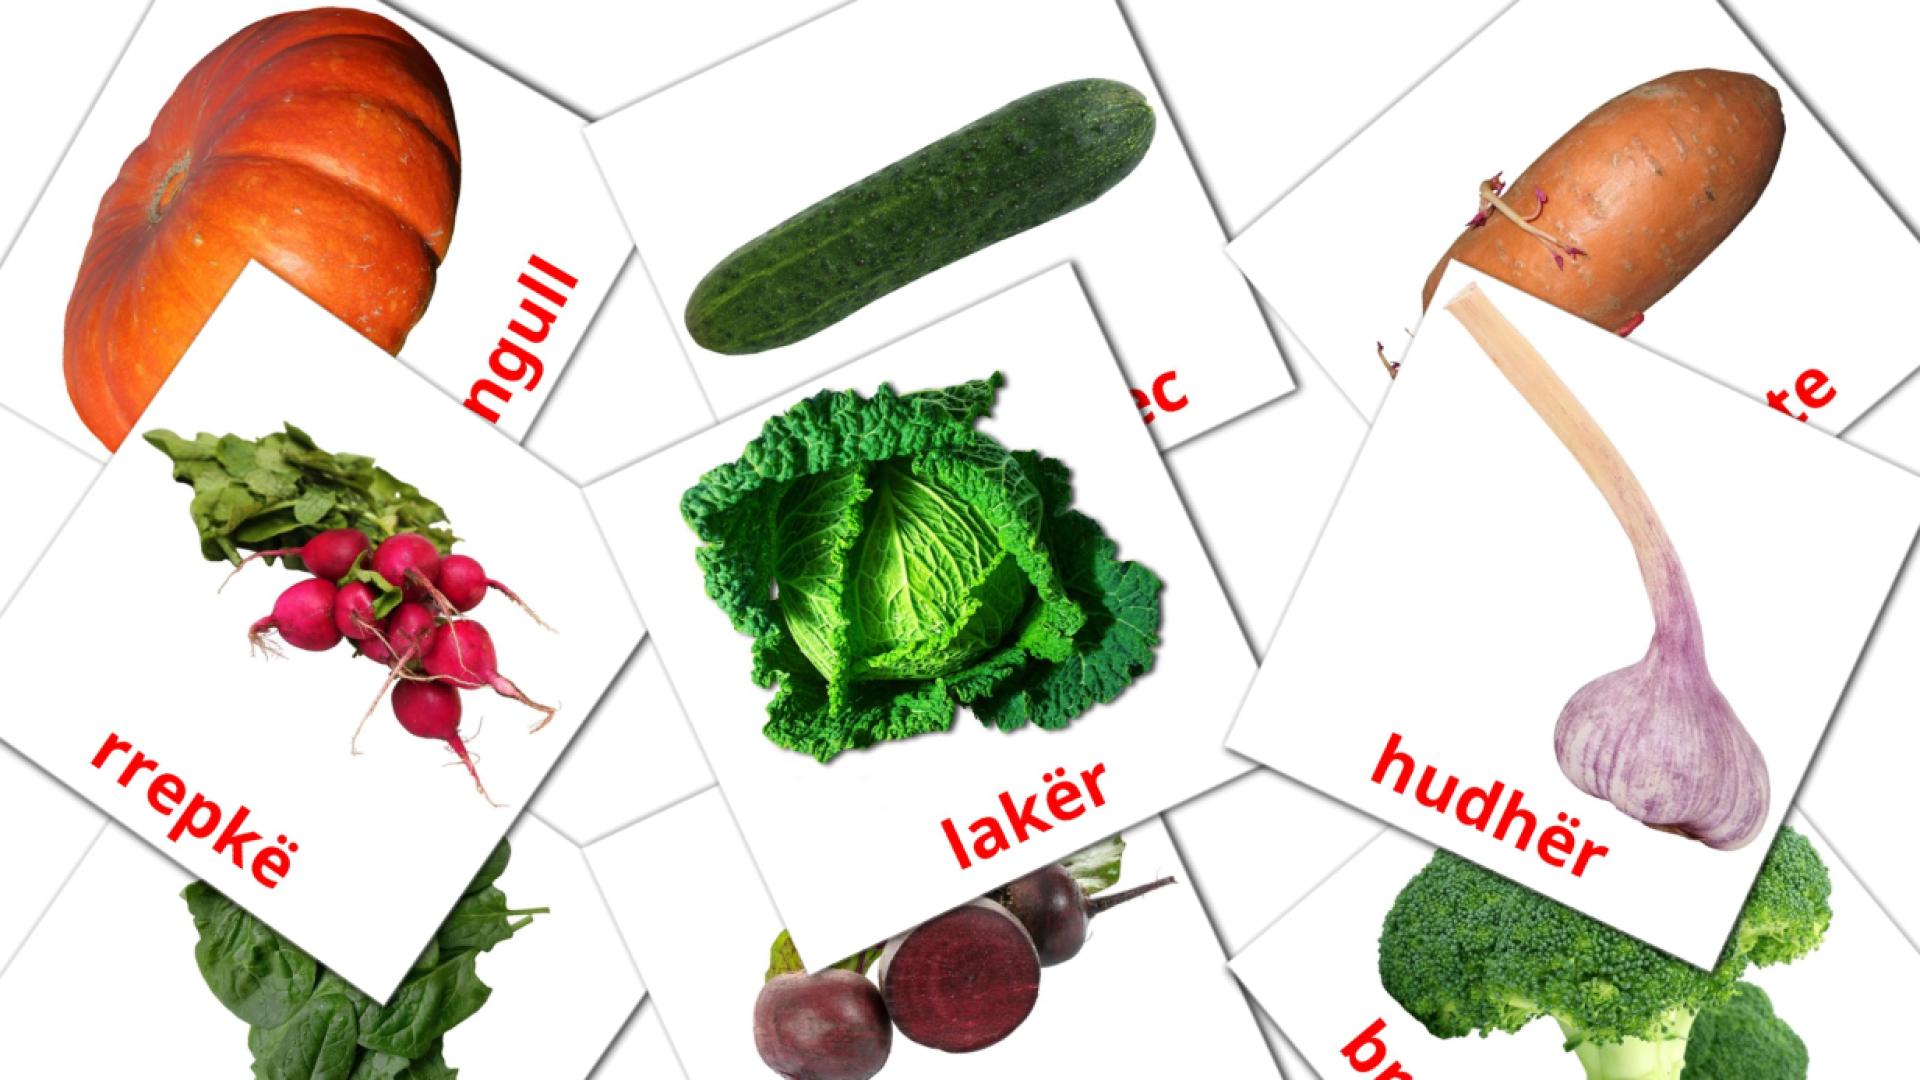 Les Légumes - cartes de vocabulaire albanais